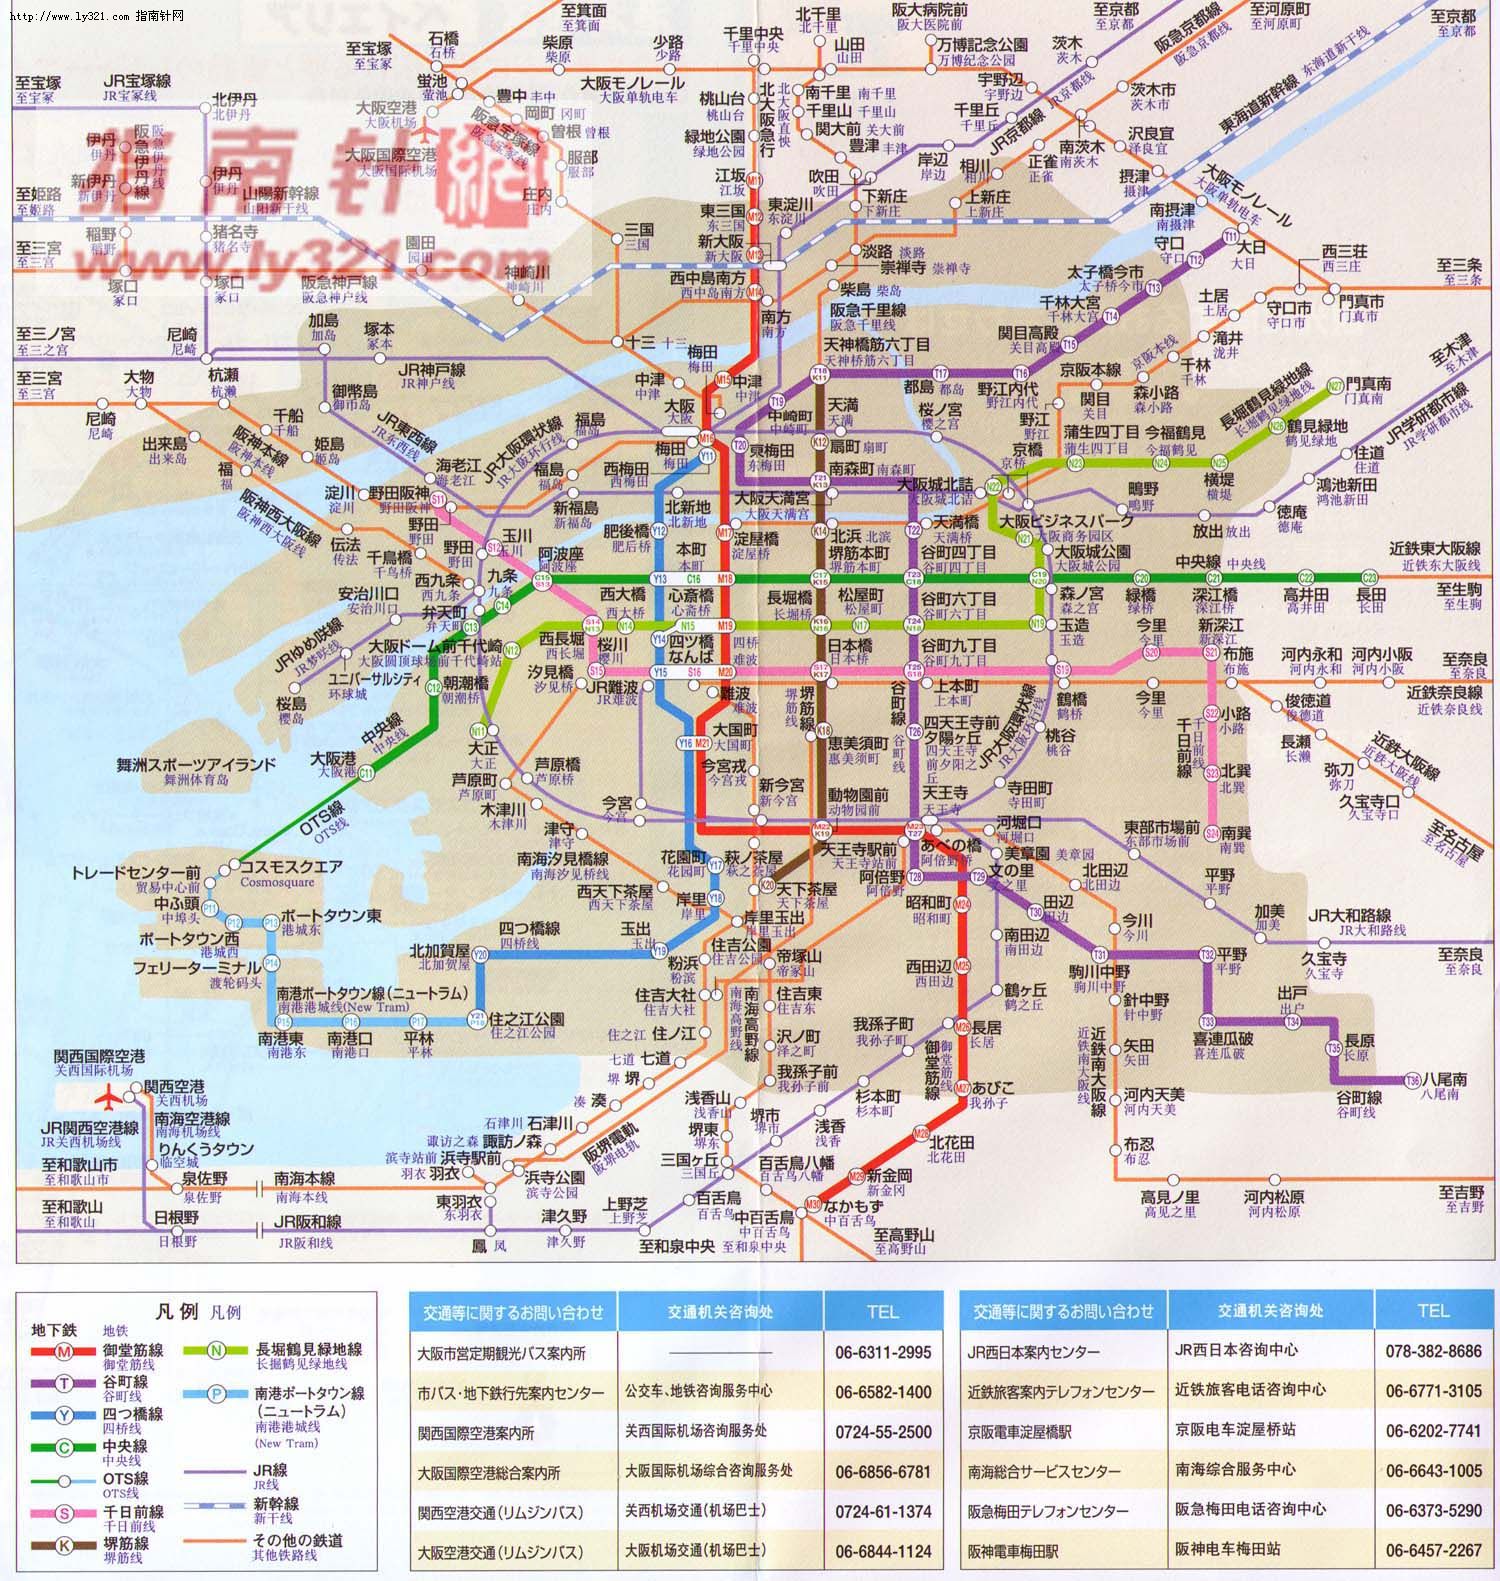 日本京都市营地铁线路图_运营时间票价站点_查询下载|地铁图